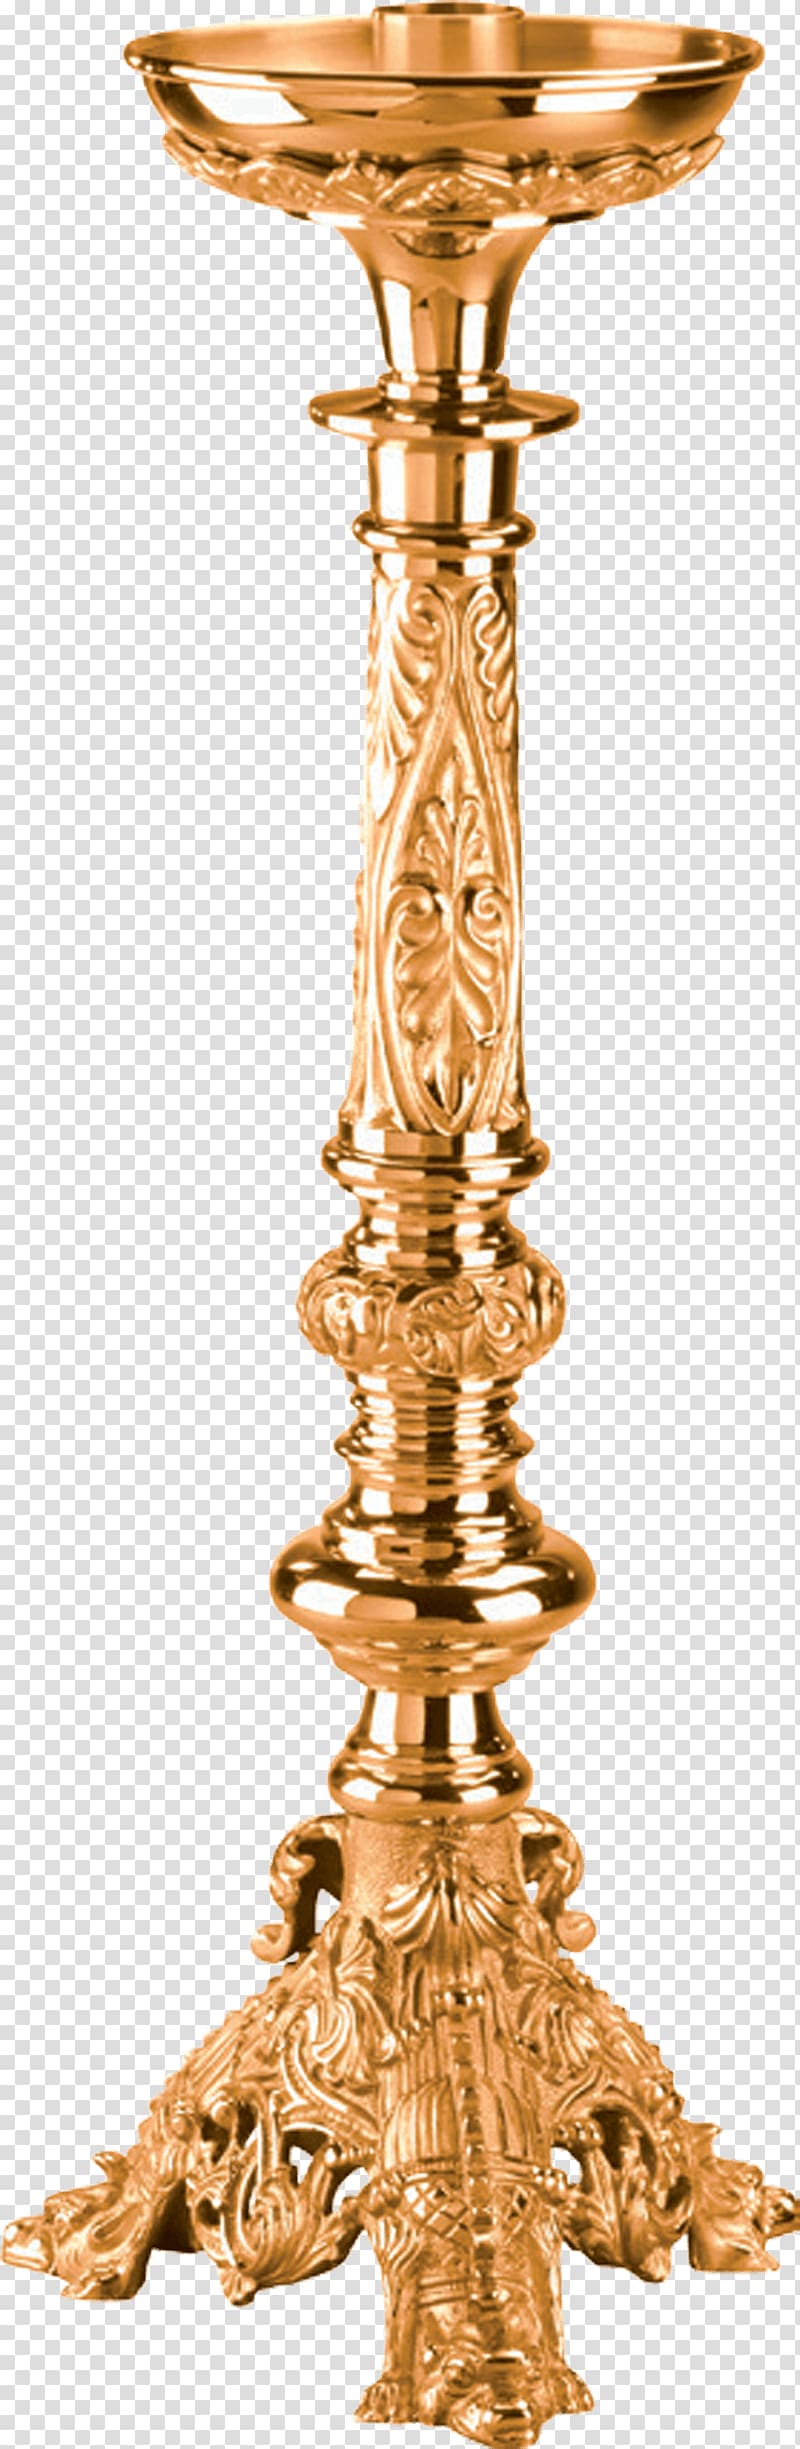 Brass Candlestick 01504 Copper Church, Brass transparent background PNG clipart